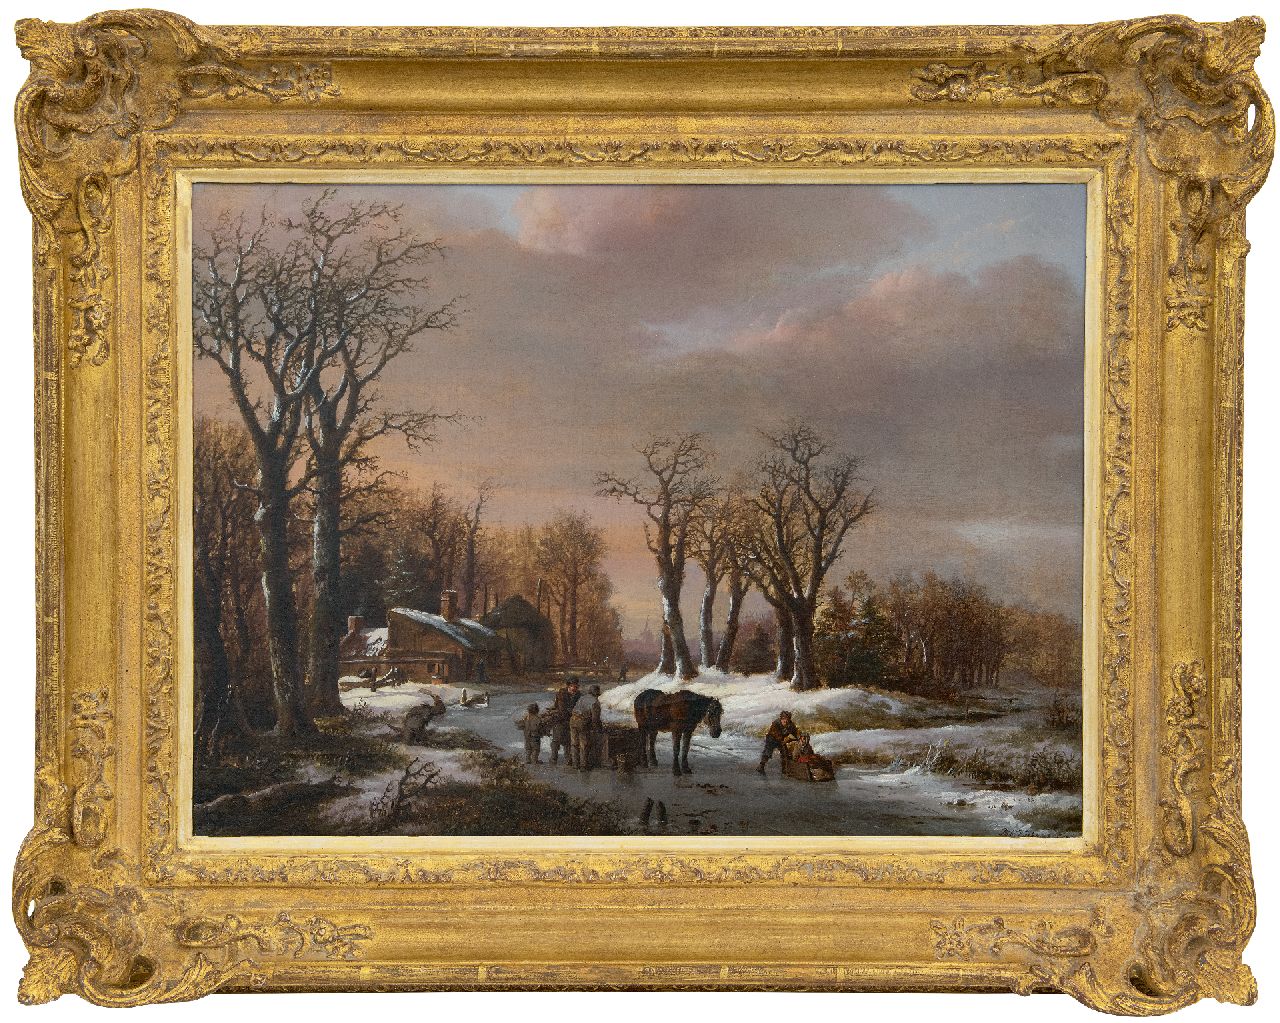 Koekkoek B.C.  | Barend Cornelis Koekkoek | Schilderijen te koop aangeboden | Winterlandschap met paardenslee op het ijs, olieverf op doek 44,0 x 58,0 cm, gesigneerd rechtsonder en gedateerd 1824